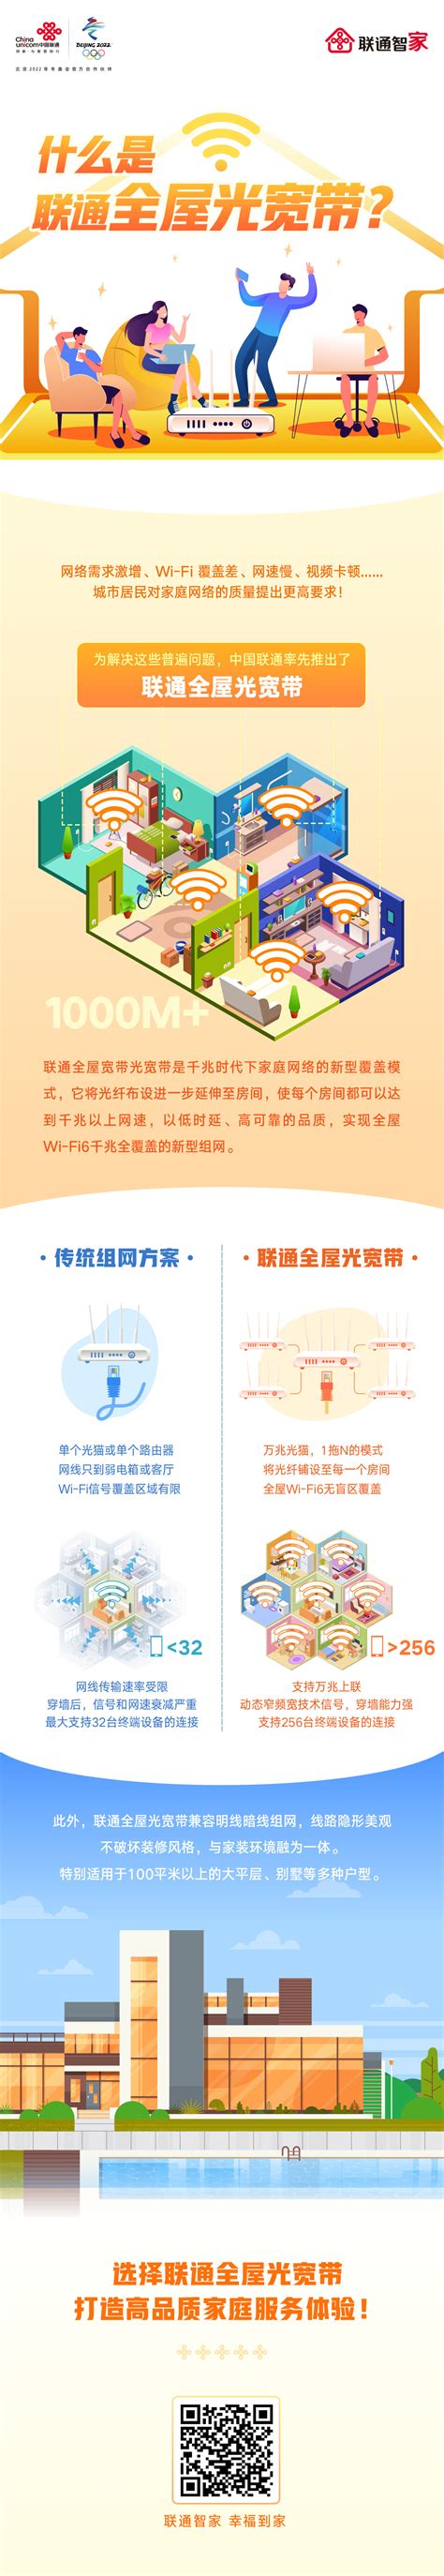 一张图带你了解联通全屋光宽带 - 中国联通 — C114通信网